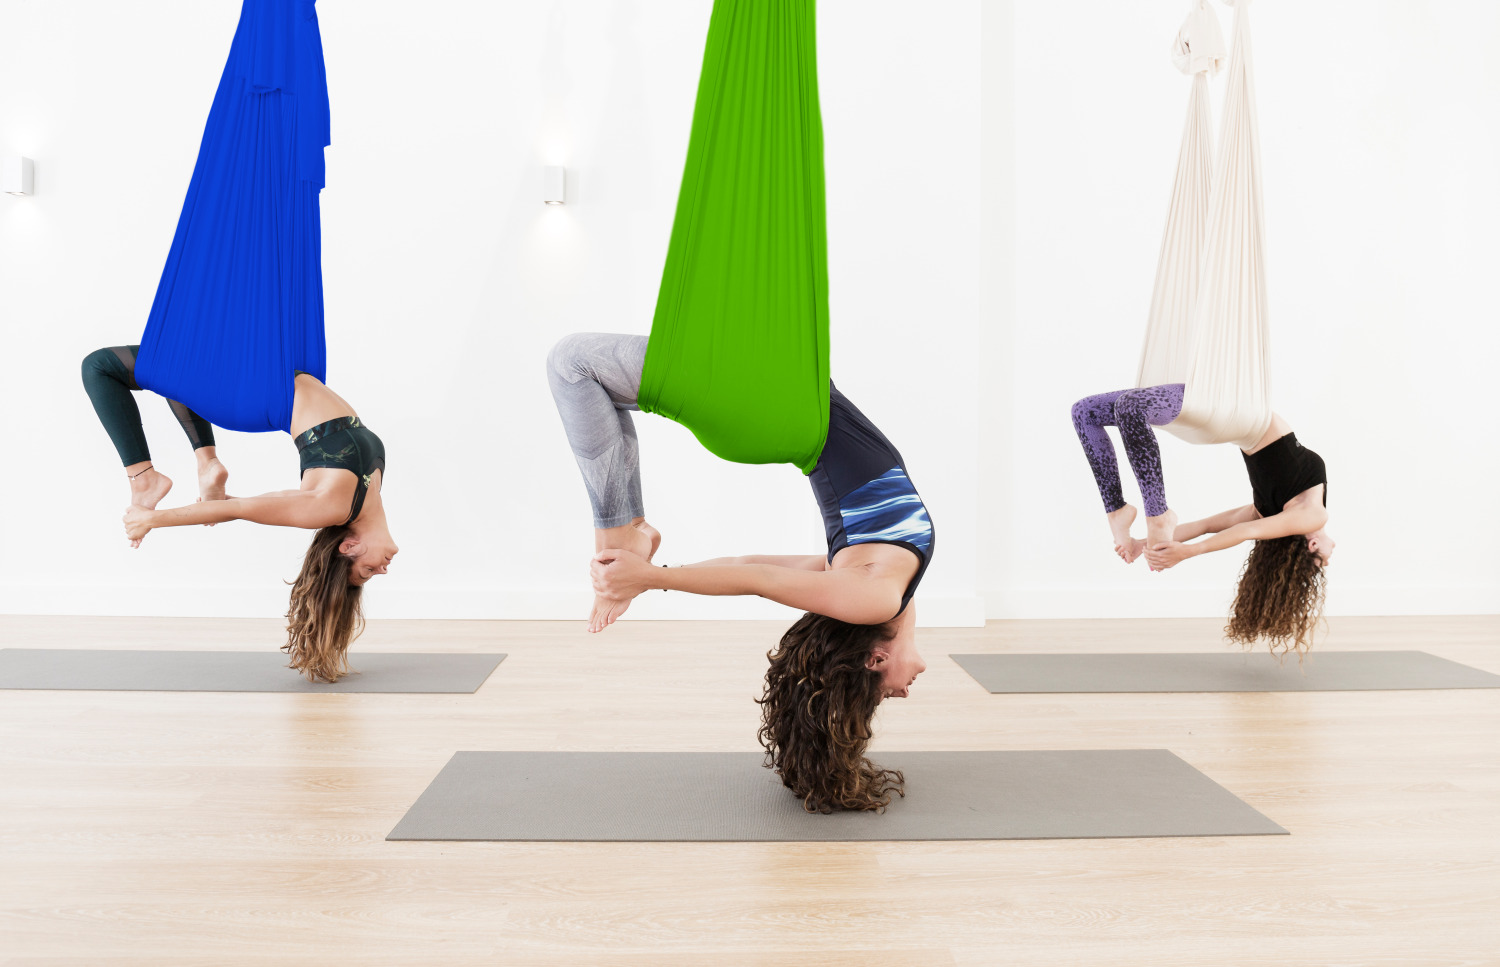 Aerial Yoga: Tipps und Tricks zu den Asanas im Tuch